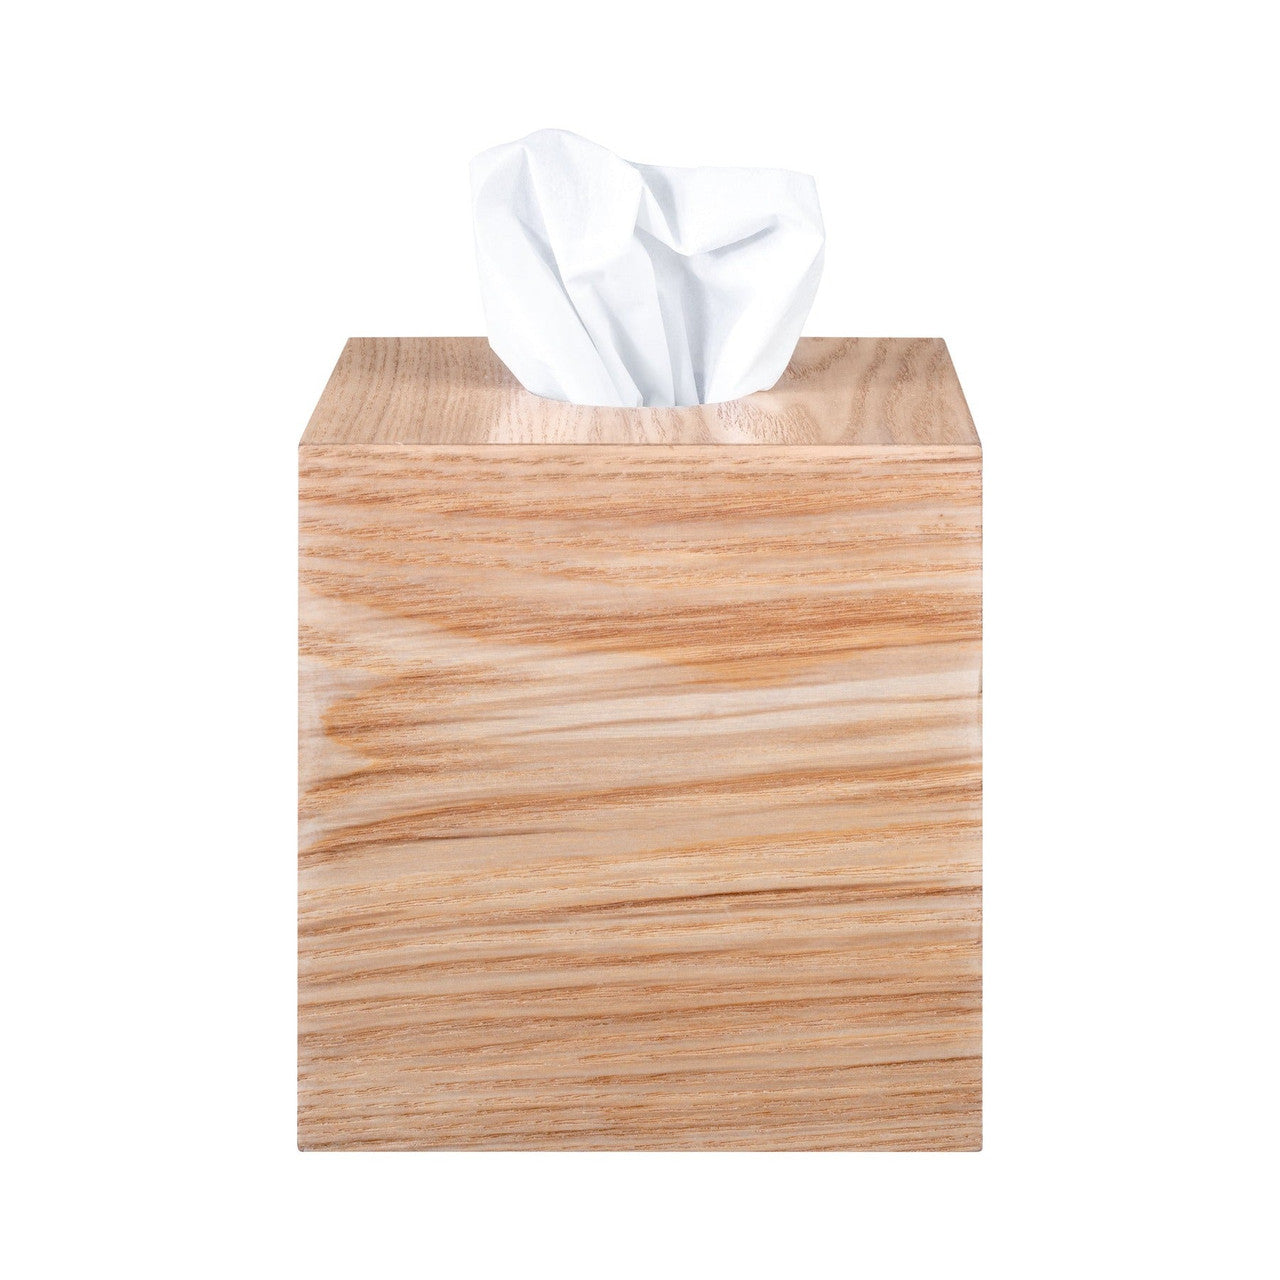 WILO Wood Boutique Tissue Box Cover